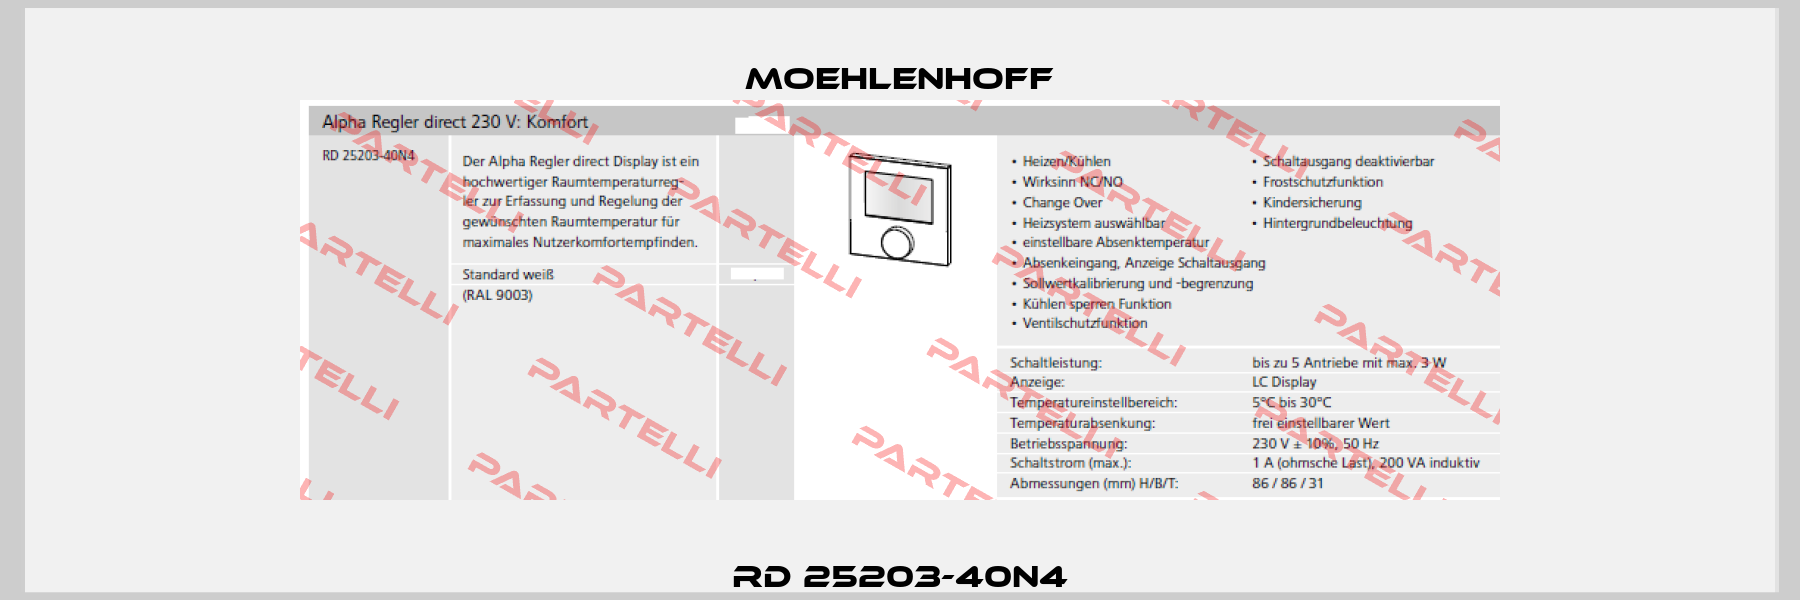 RD 25203-40N4 Moehlenhoff